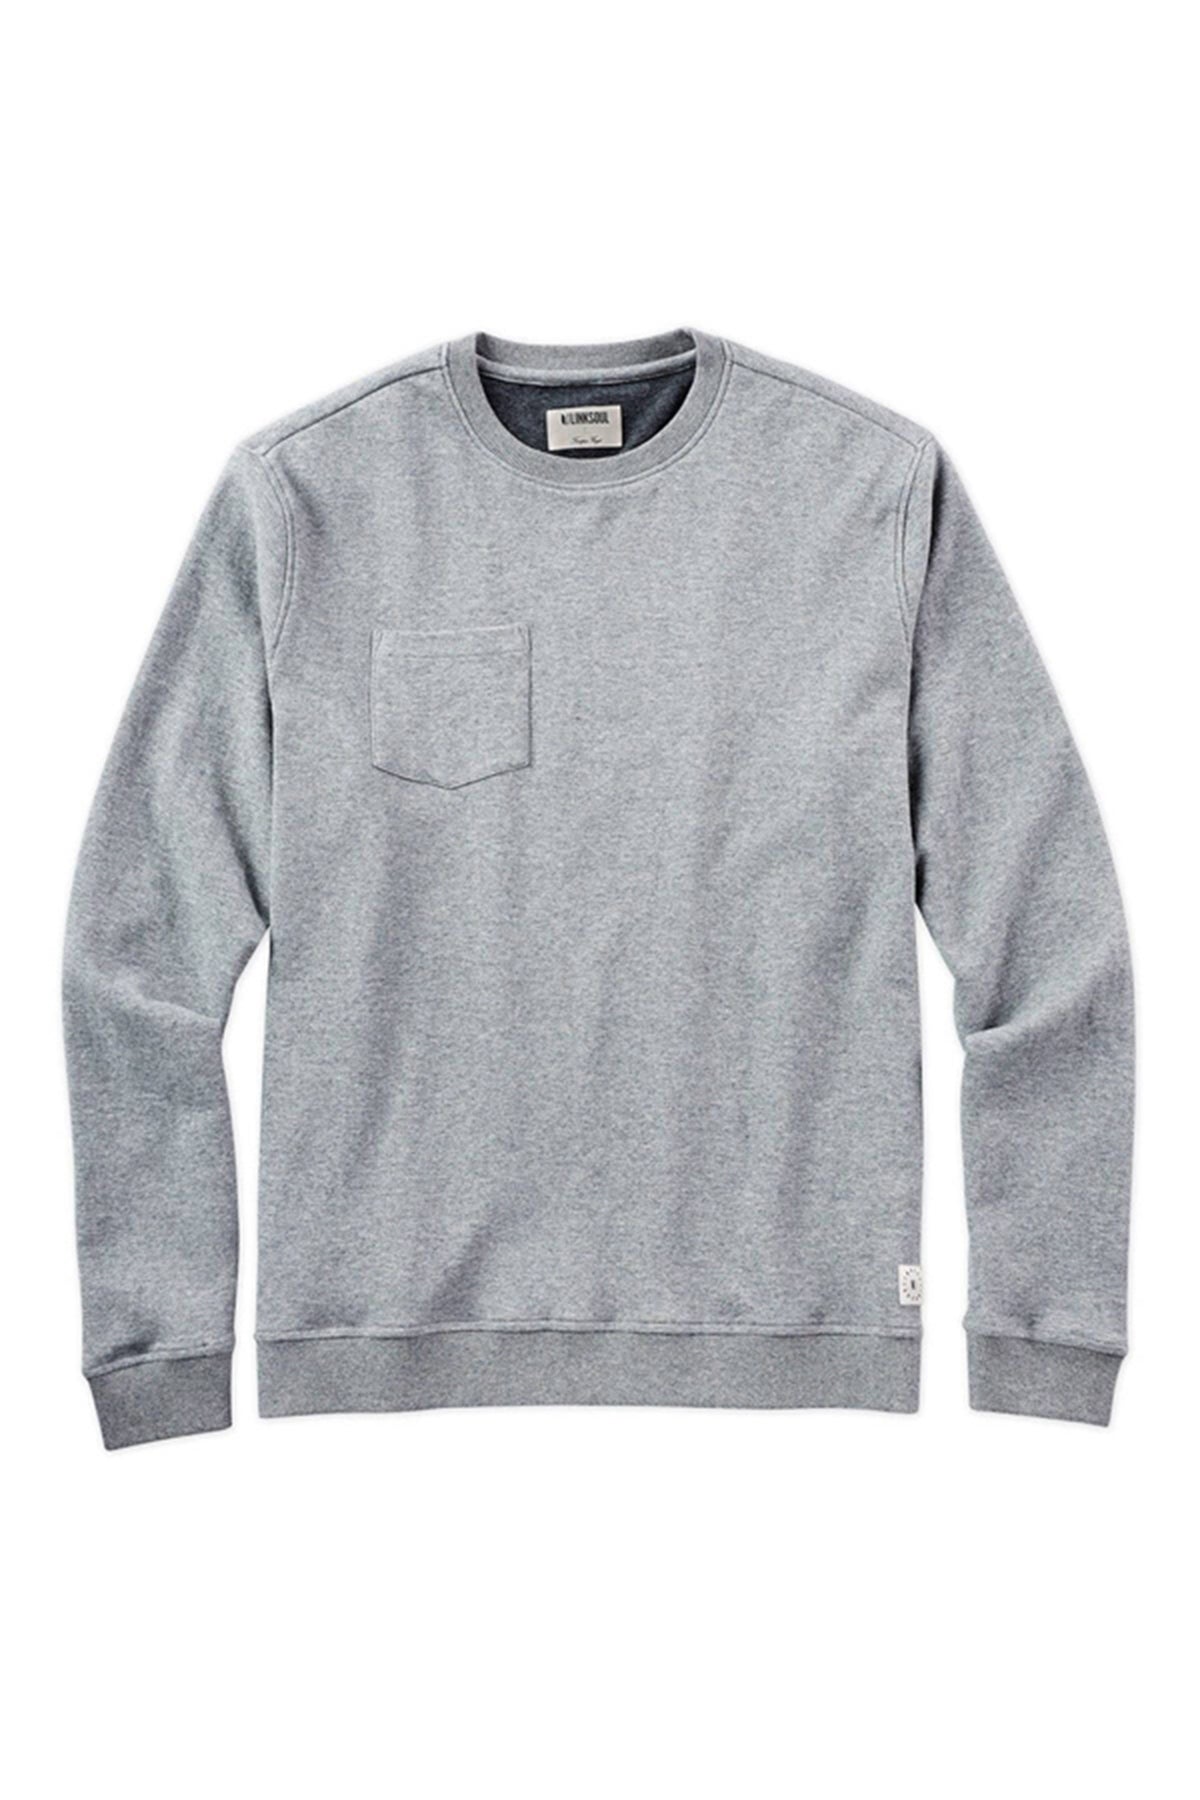 Linksoul Mens Double knit Pocket Sweatshirt, Heather Grey